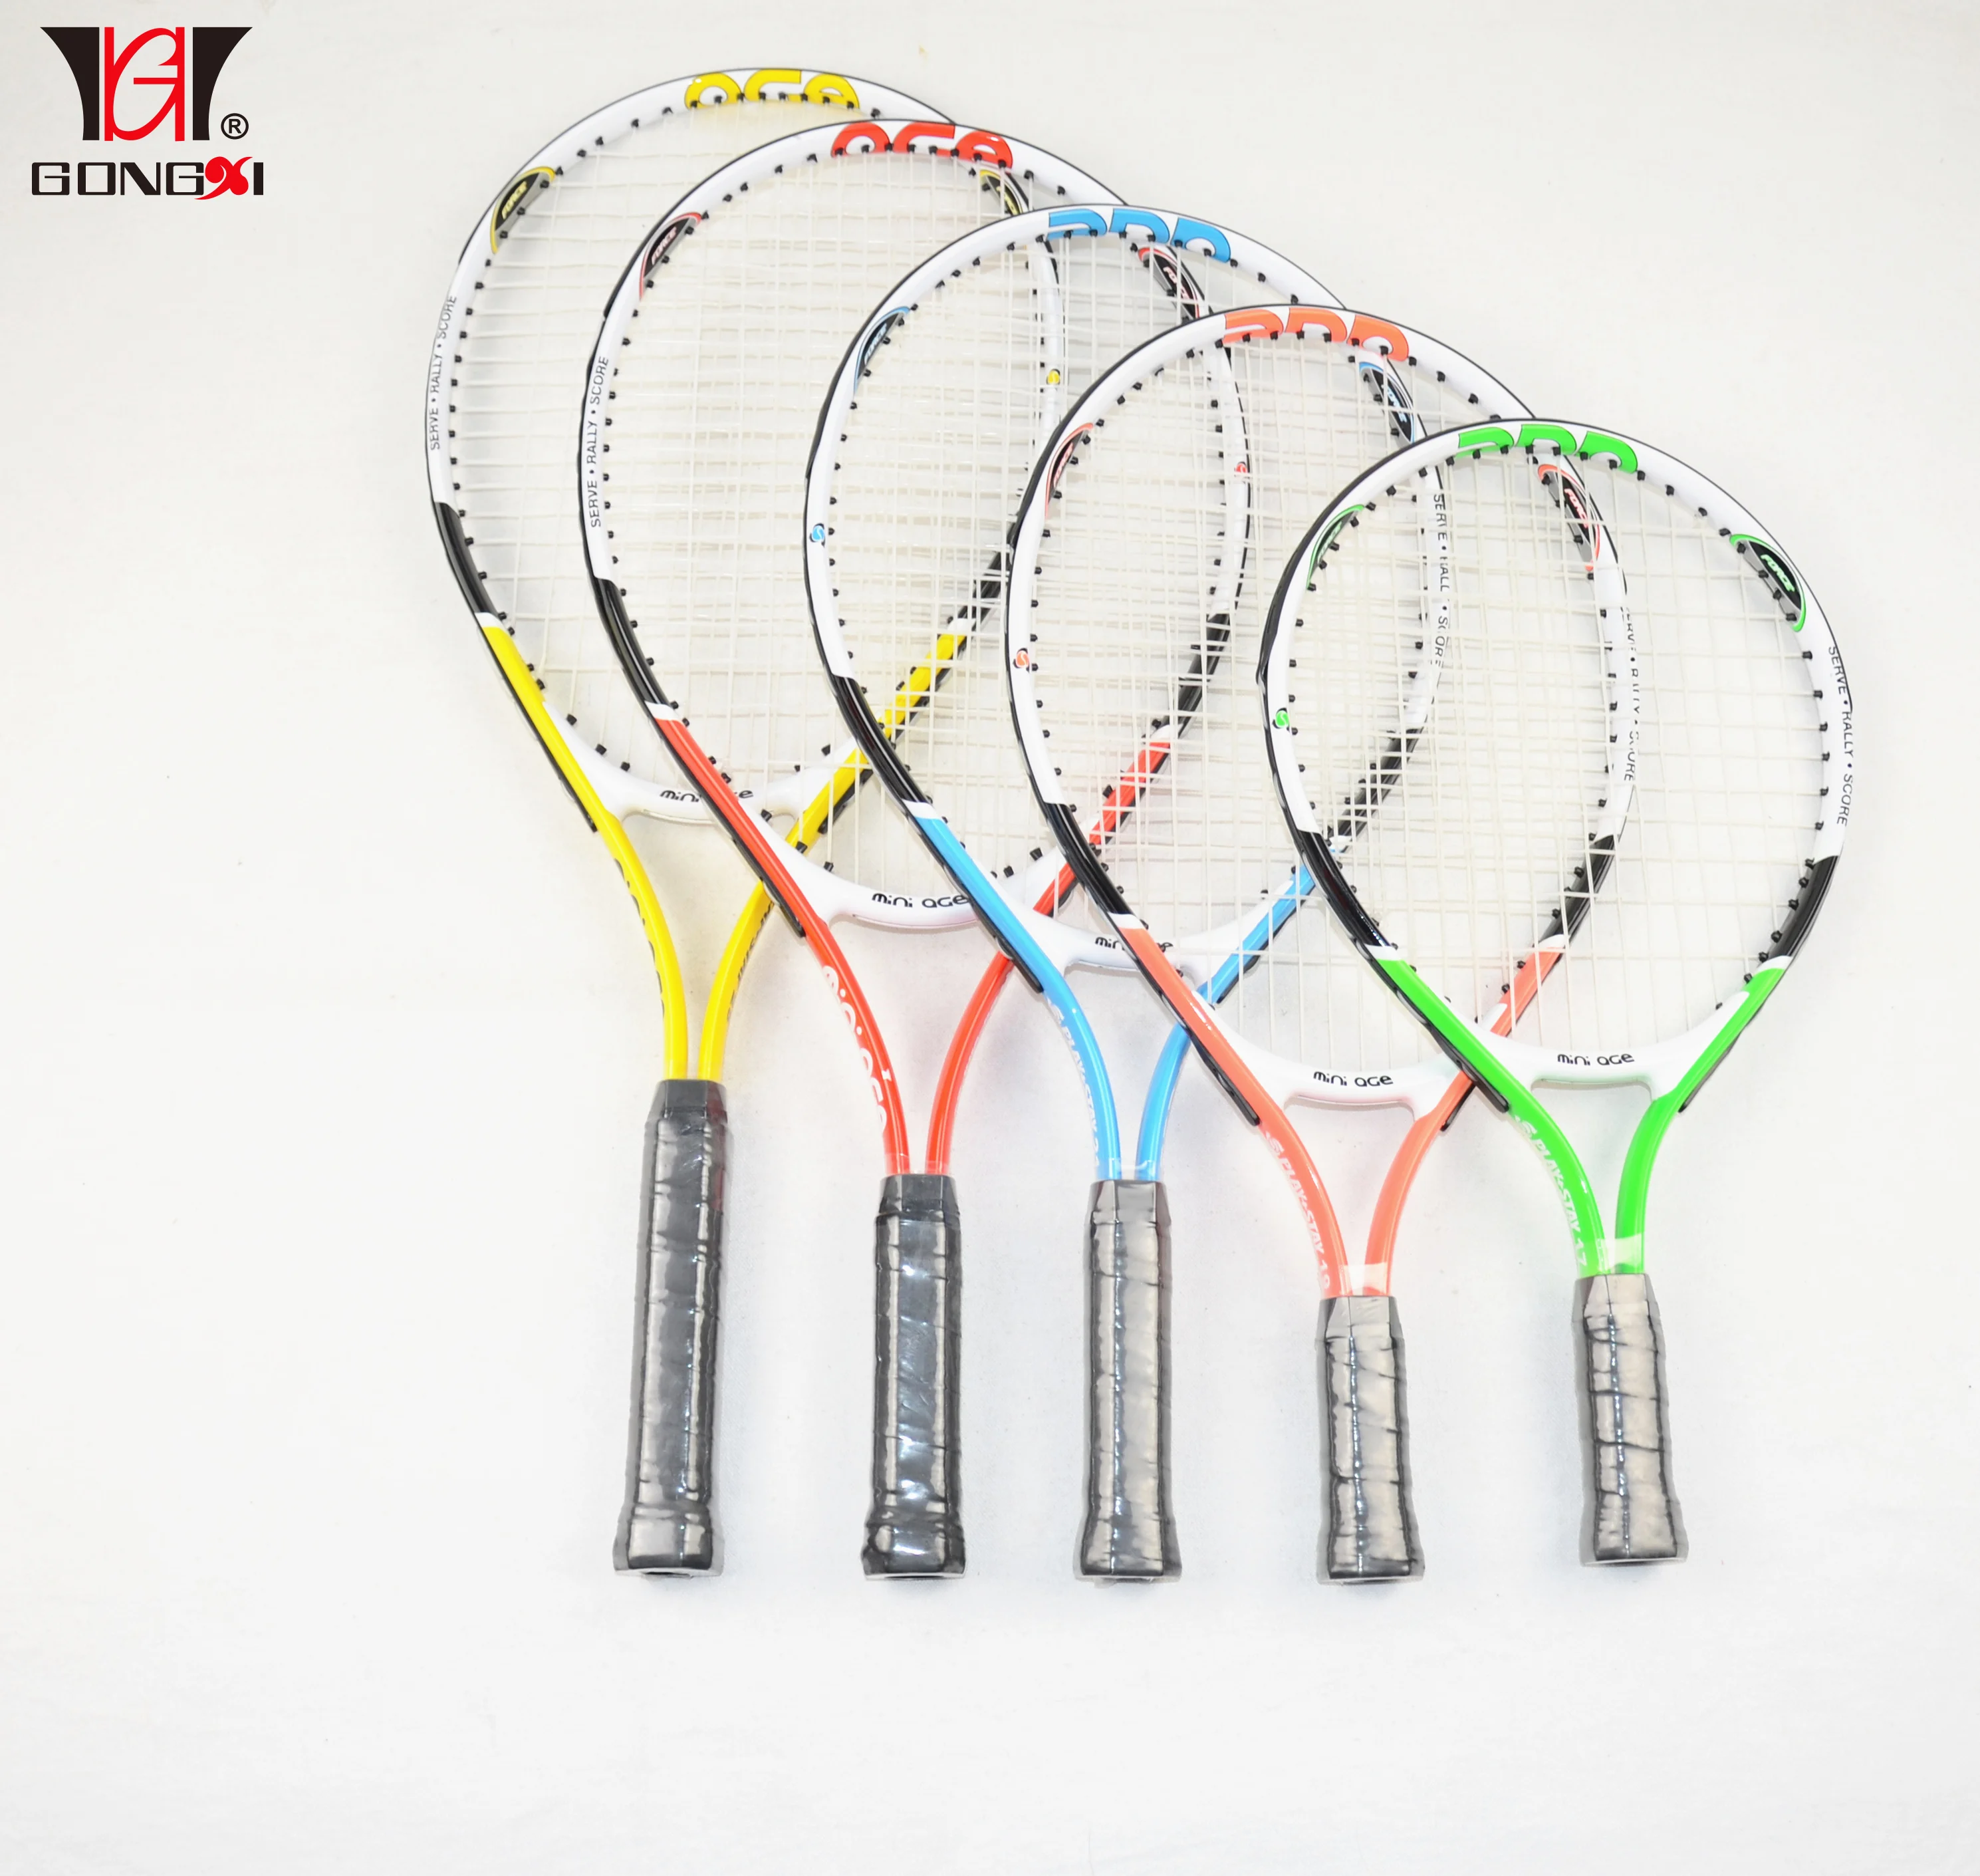 PaulStore Kids 2 Player Tennis Racquet Set Aluminium Metal Rackets & Ball Carrying Case